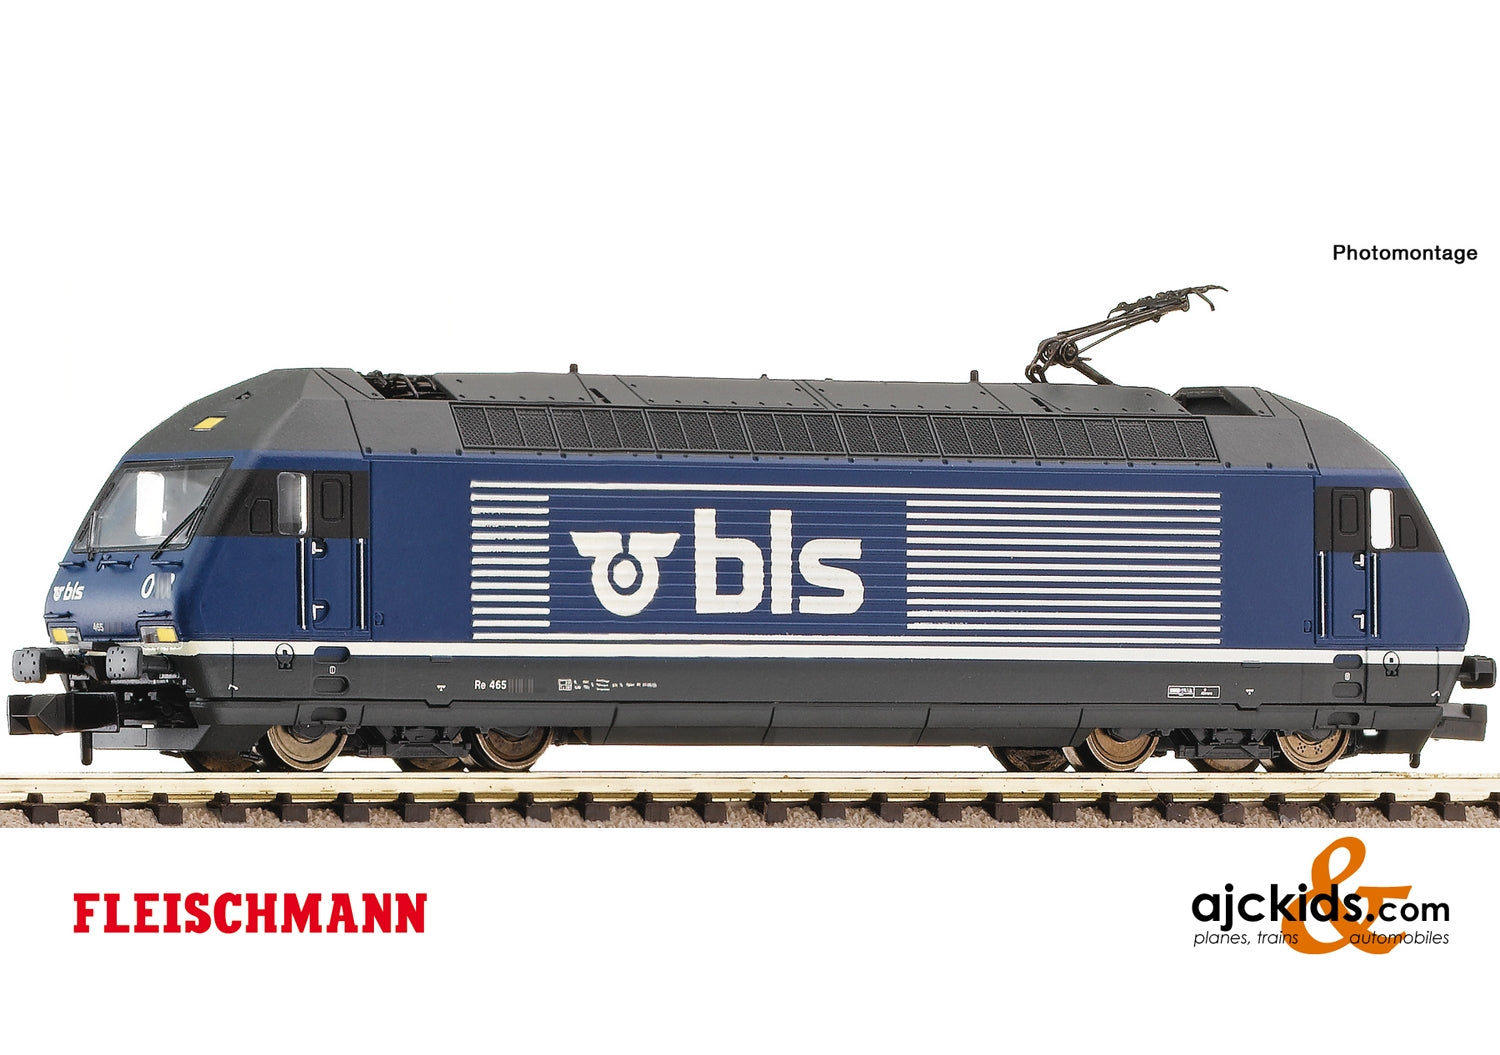 Fleischmann 731471 - Electric locomotive Re 465